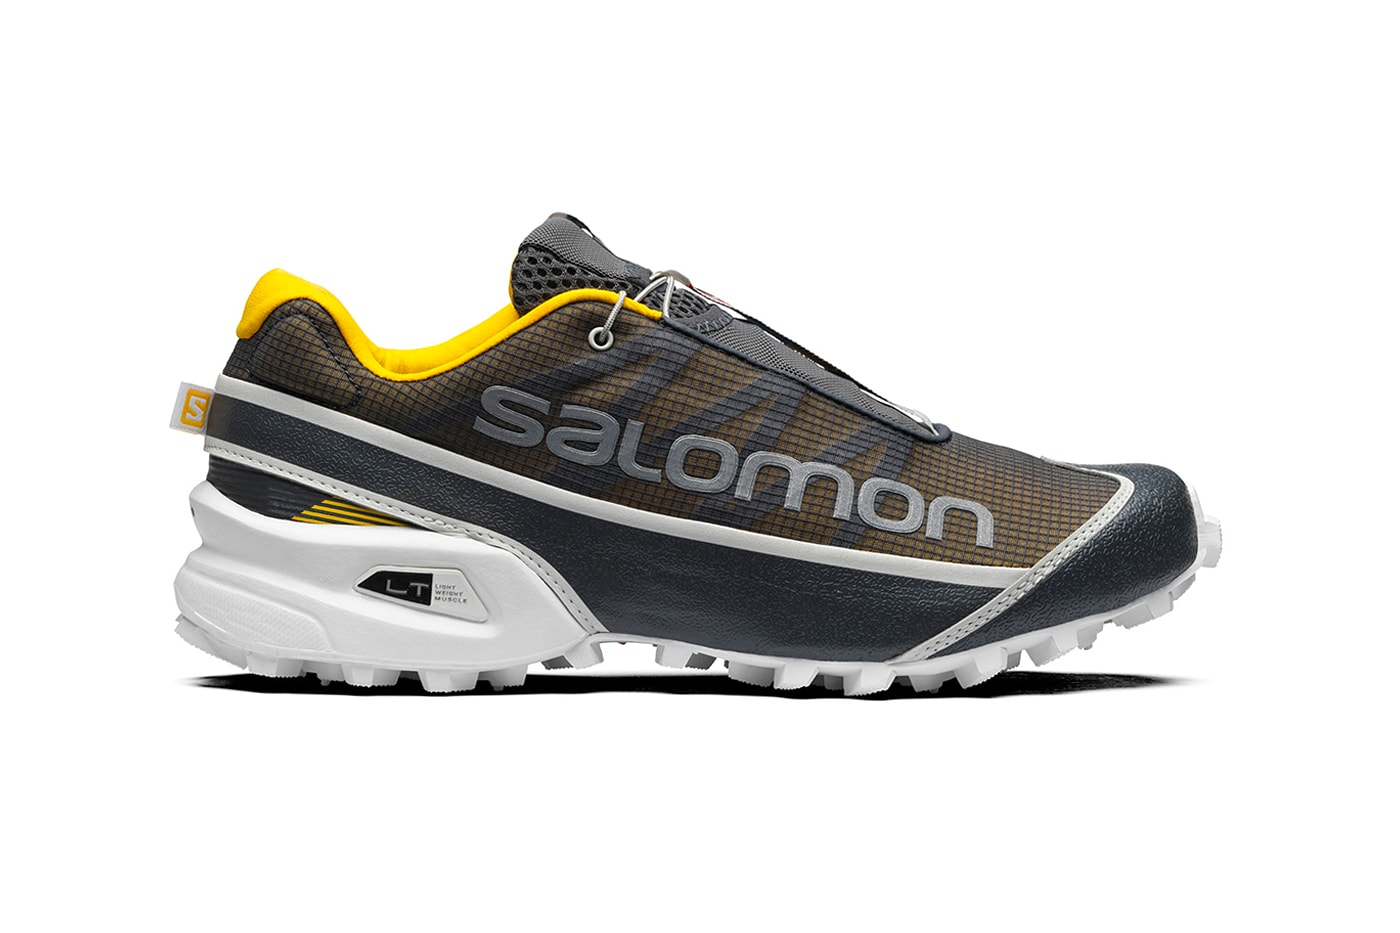 Salomon Streetcross Ebony Sulphur Lunar Rock menswear streetwear kicks shoes spring summer 2021 ss21 collection sneakers release